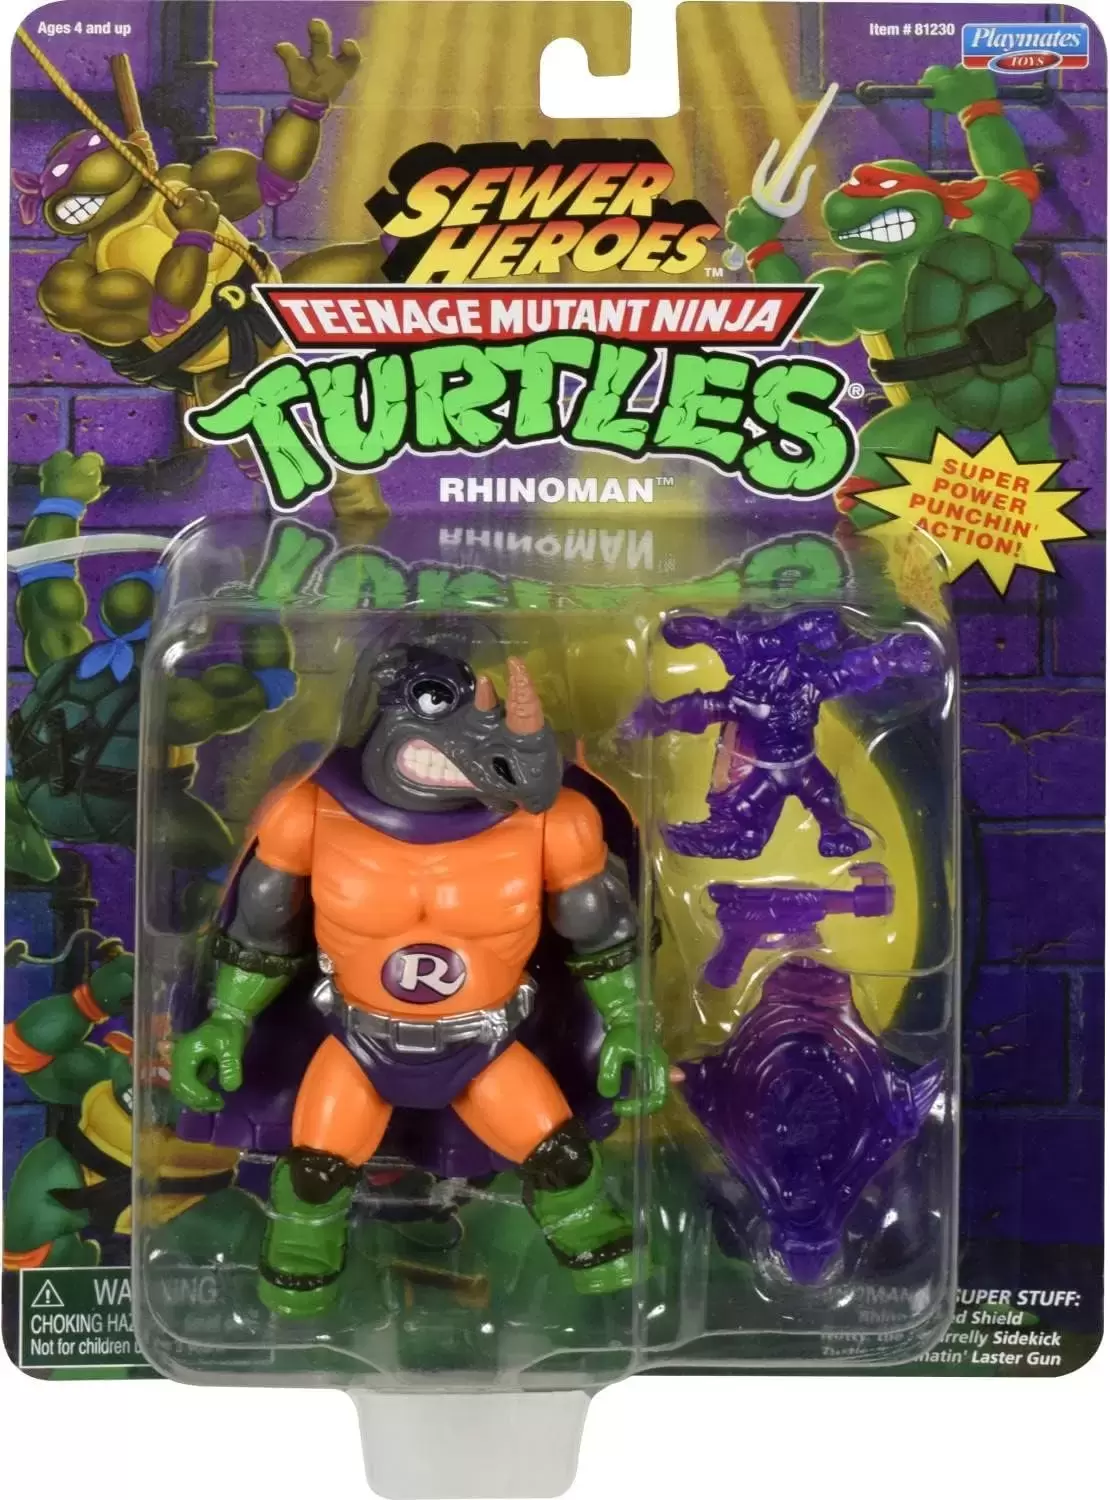 Vintage Teenage Mutant Ninja Turtles (TMNT) - Sewer Heroes - Rhinoman